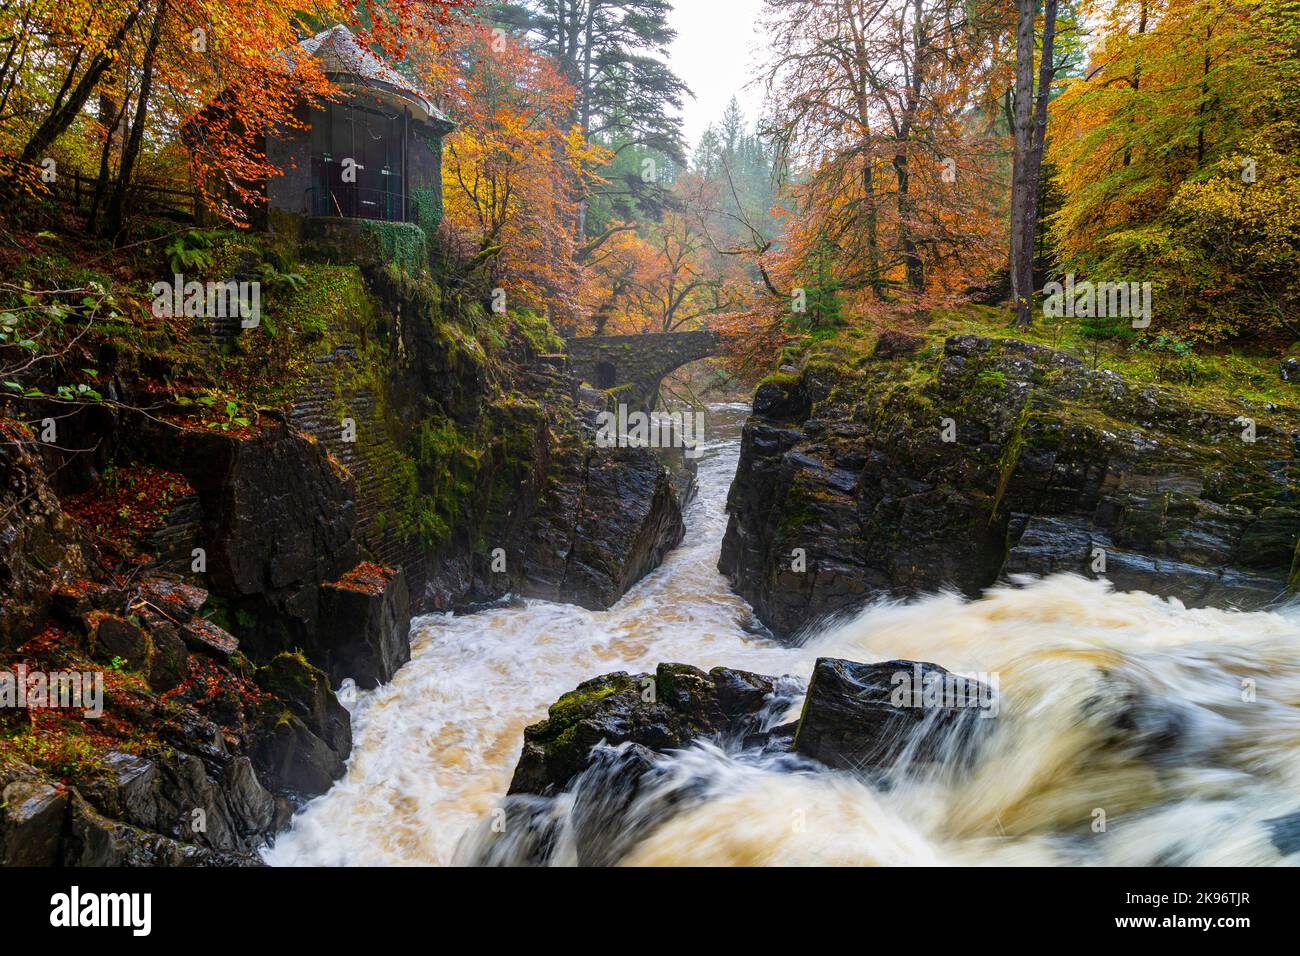 Vue des couleurs de l'automne entourant les chutes Black Linn sur la rivière Braan à l'Hermitage à Perth et Kinross, Écosse, Royaume-Uni Banque D'Images